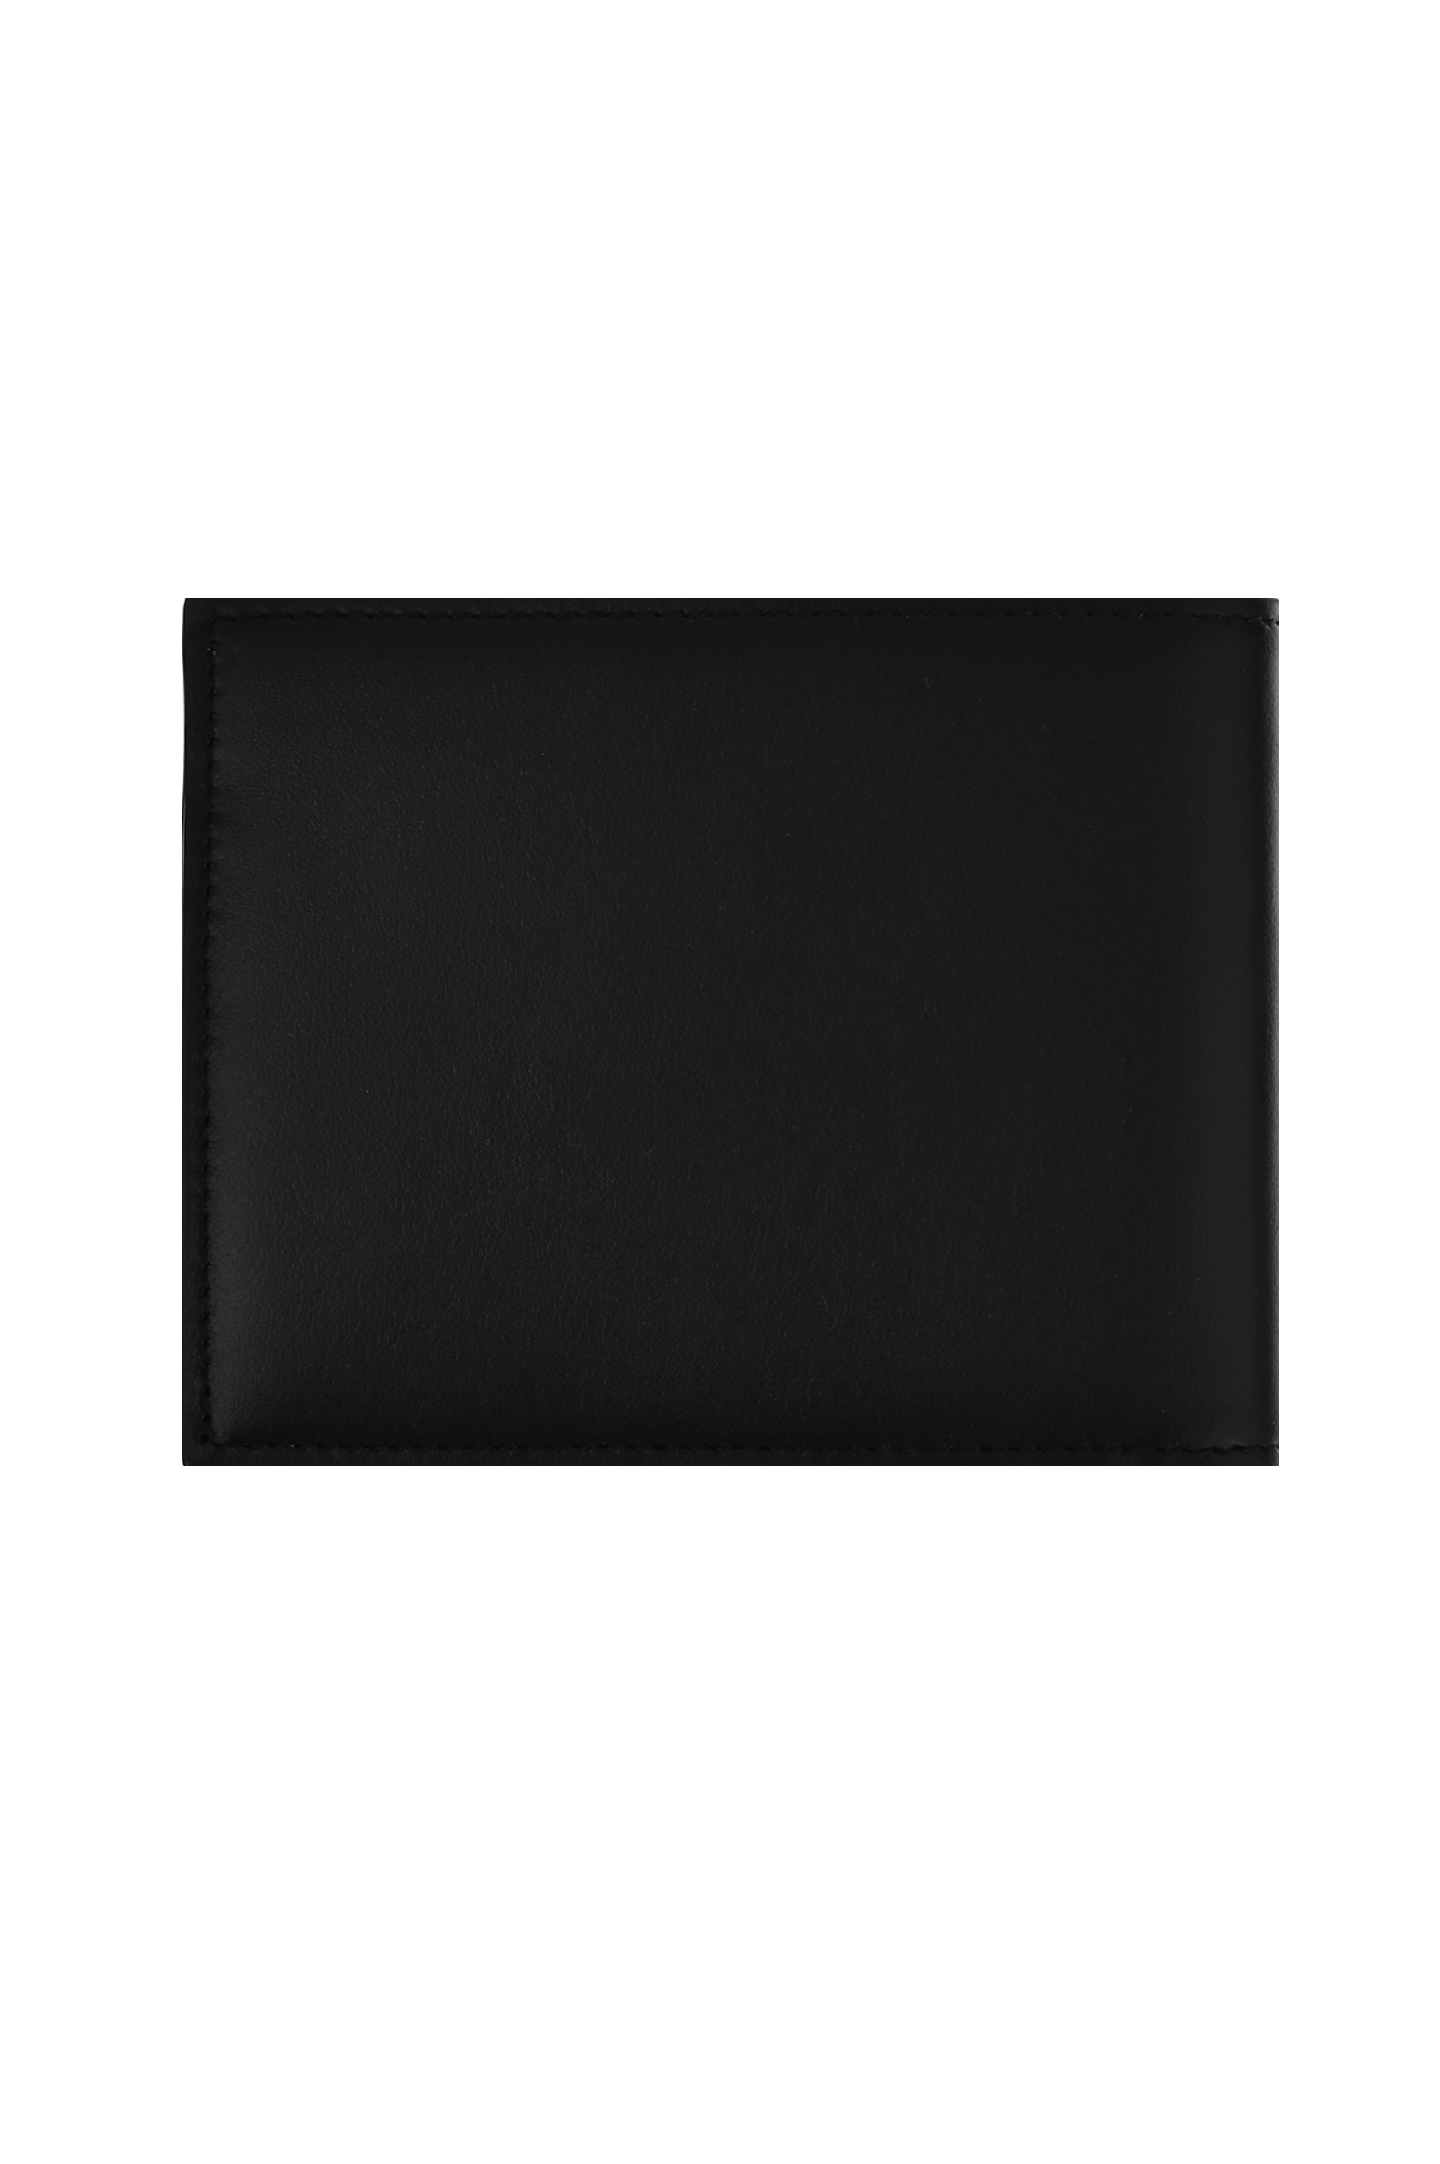 Портмоне DOLCE & GABBANA BP3102 AW576, цвет: Черный, Женский